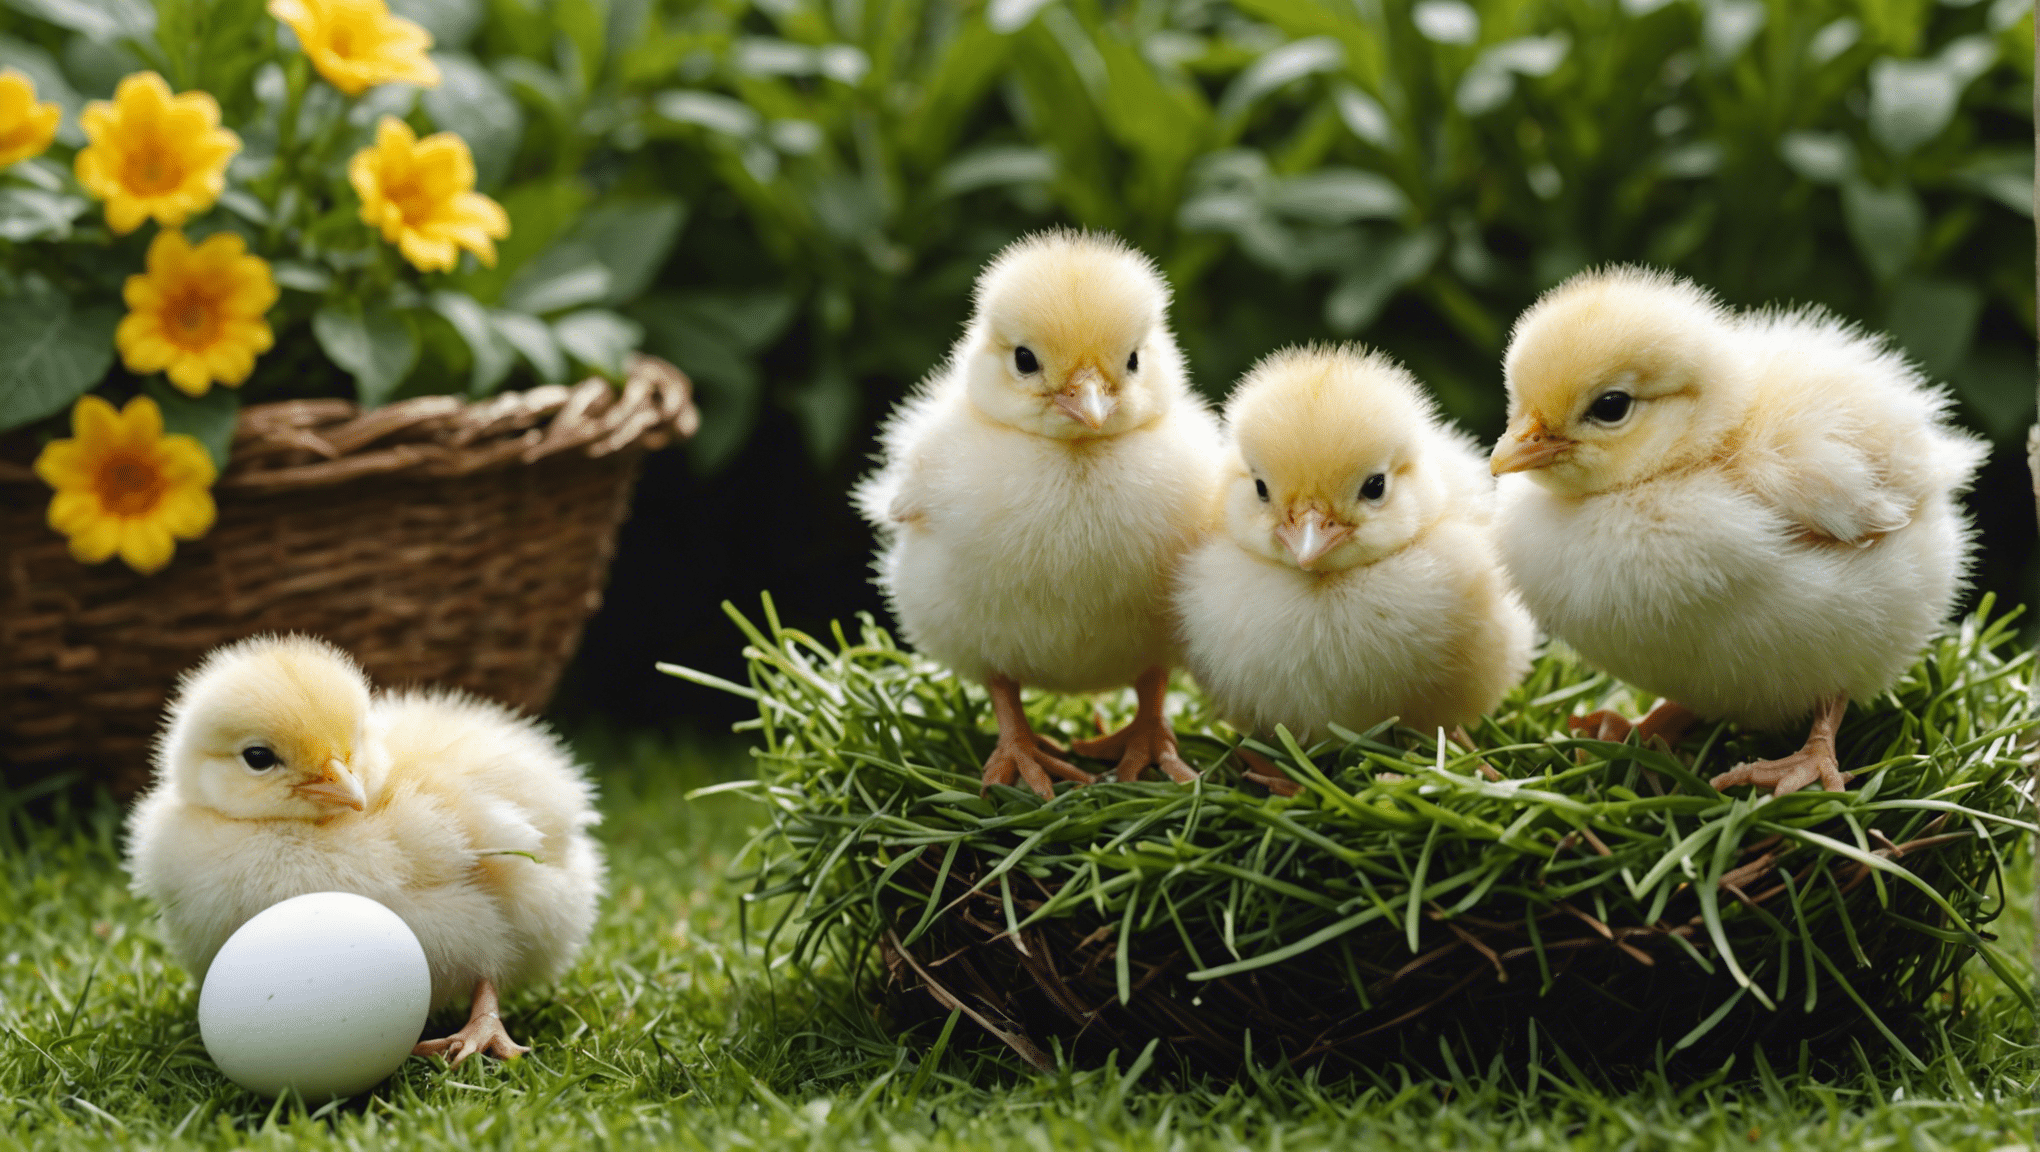 impara come allevare pulcini dalle uova con la nostra guida completa sulla schiusa e sulla cura dei pulcini.